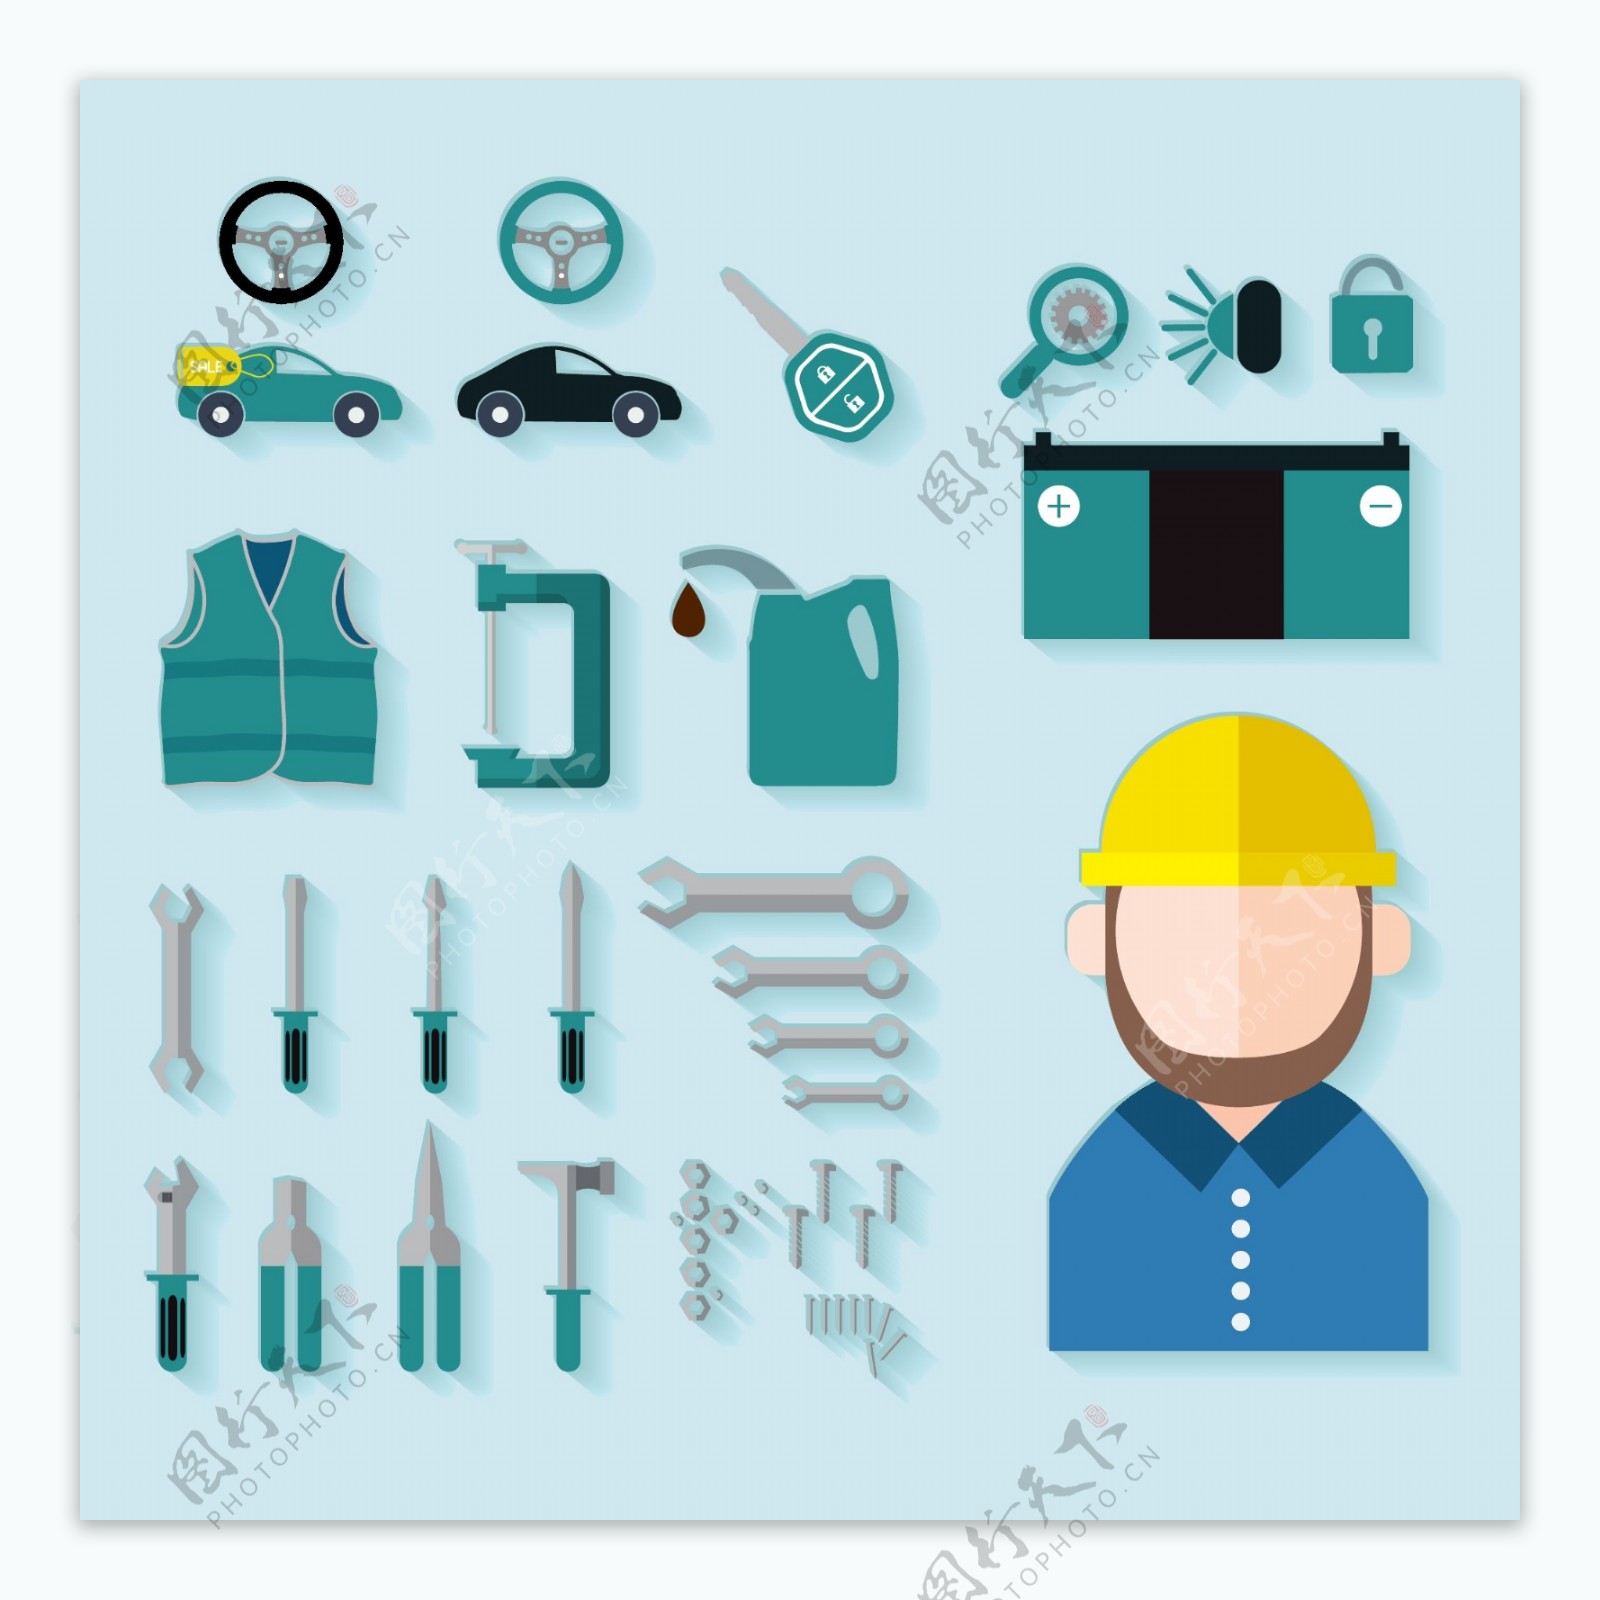 汽车维修工具和工人